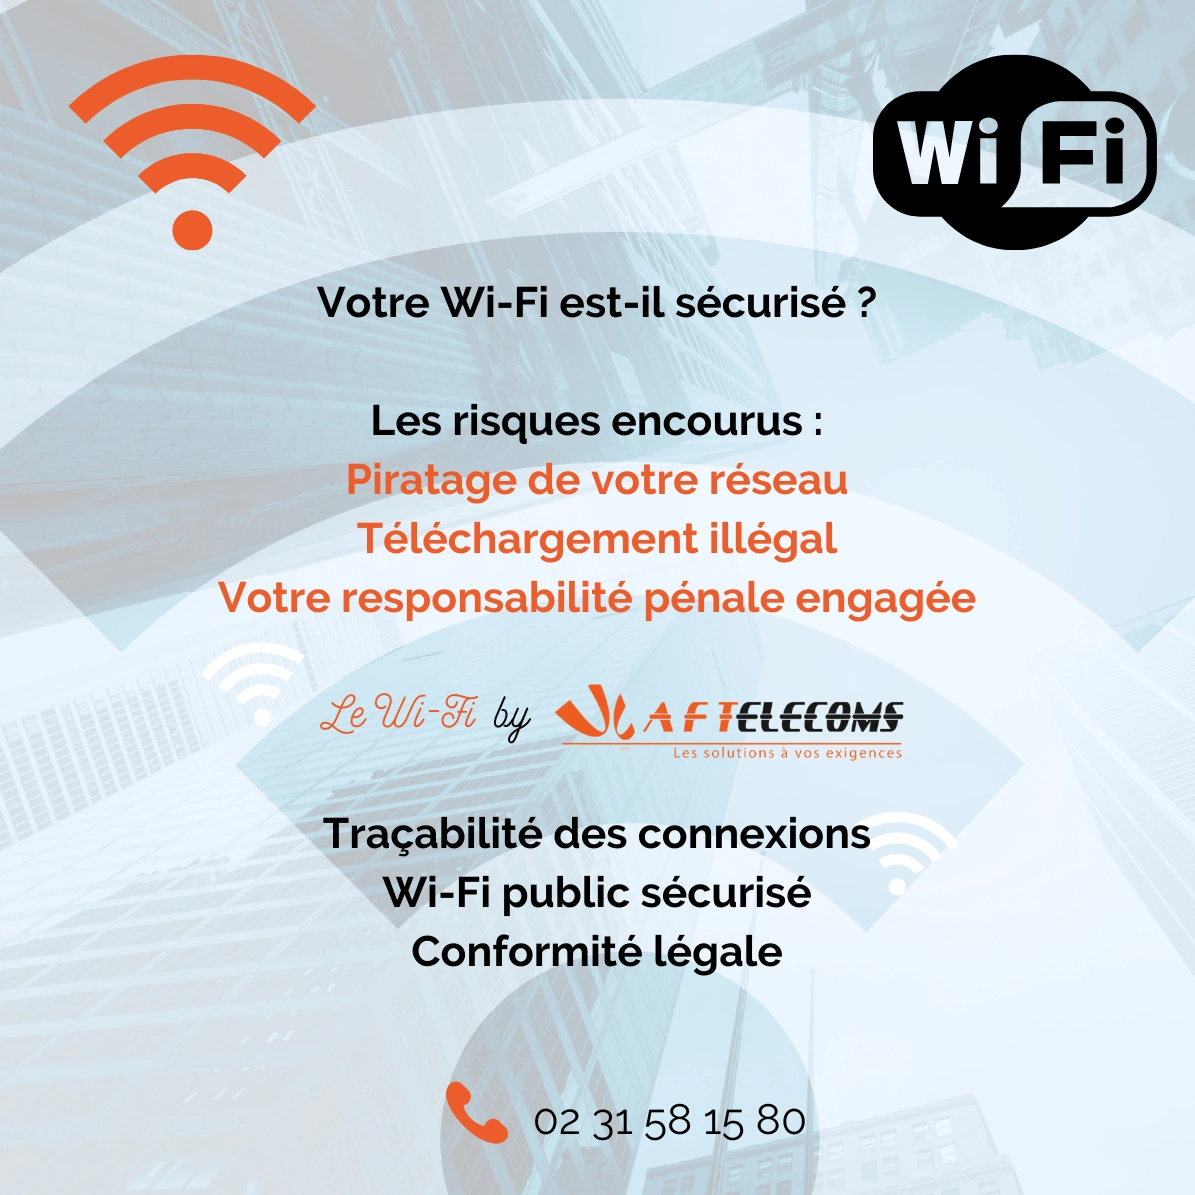 Votre Wi-Fi est-il sécurisé ?